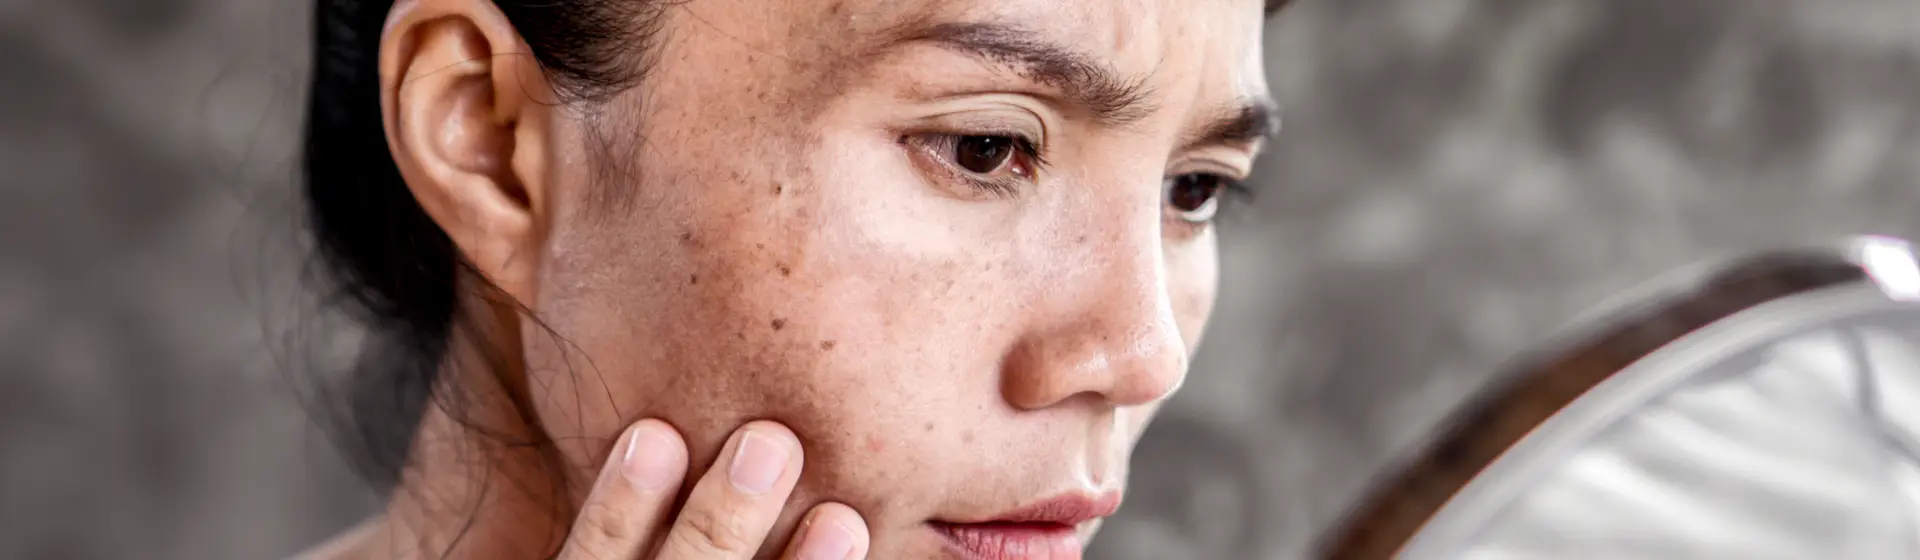 Melasma no rosto: veja 7 produtos que podem amenizar as manchas